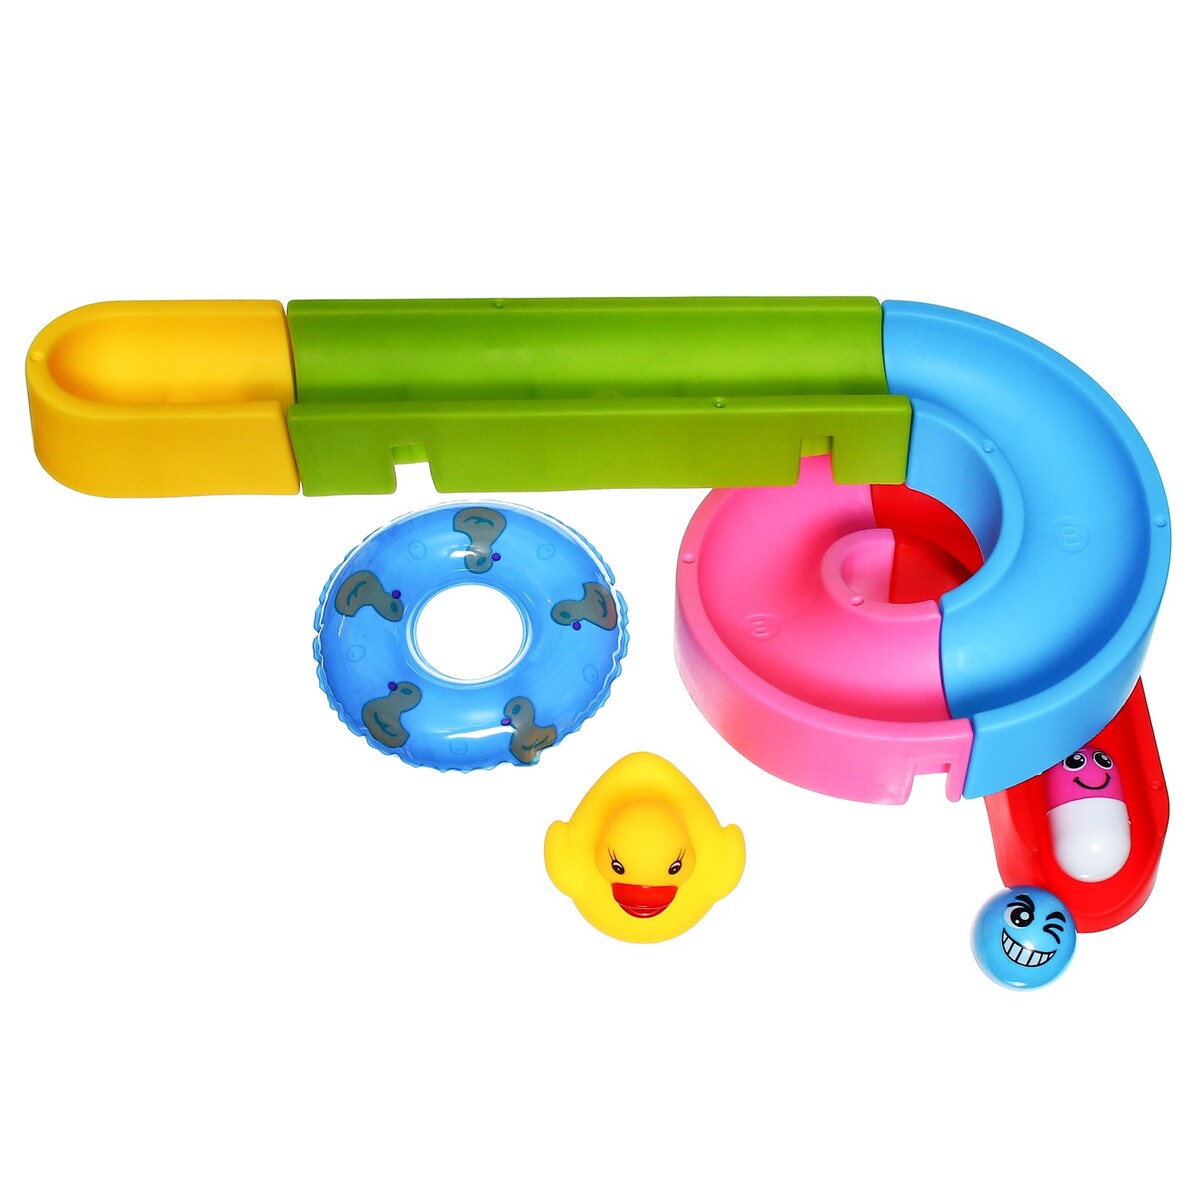 Игрушка водная горка для игры в ванной, конструктор, набор на присосках